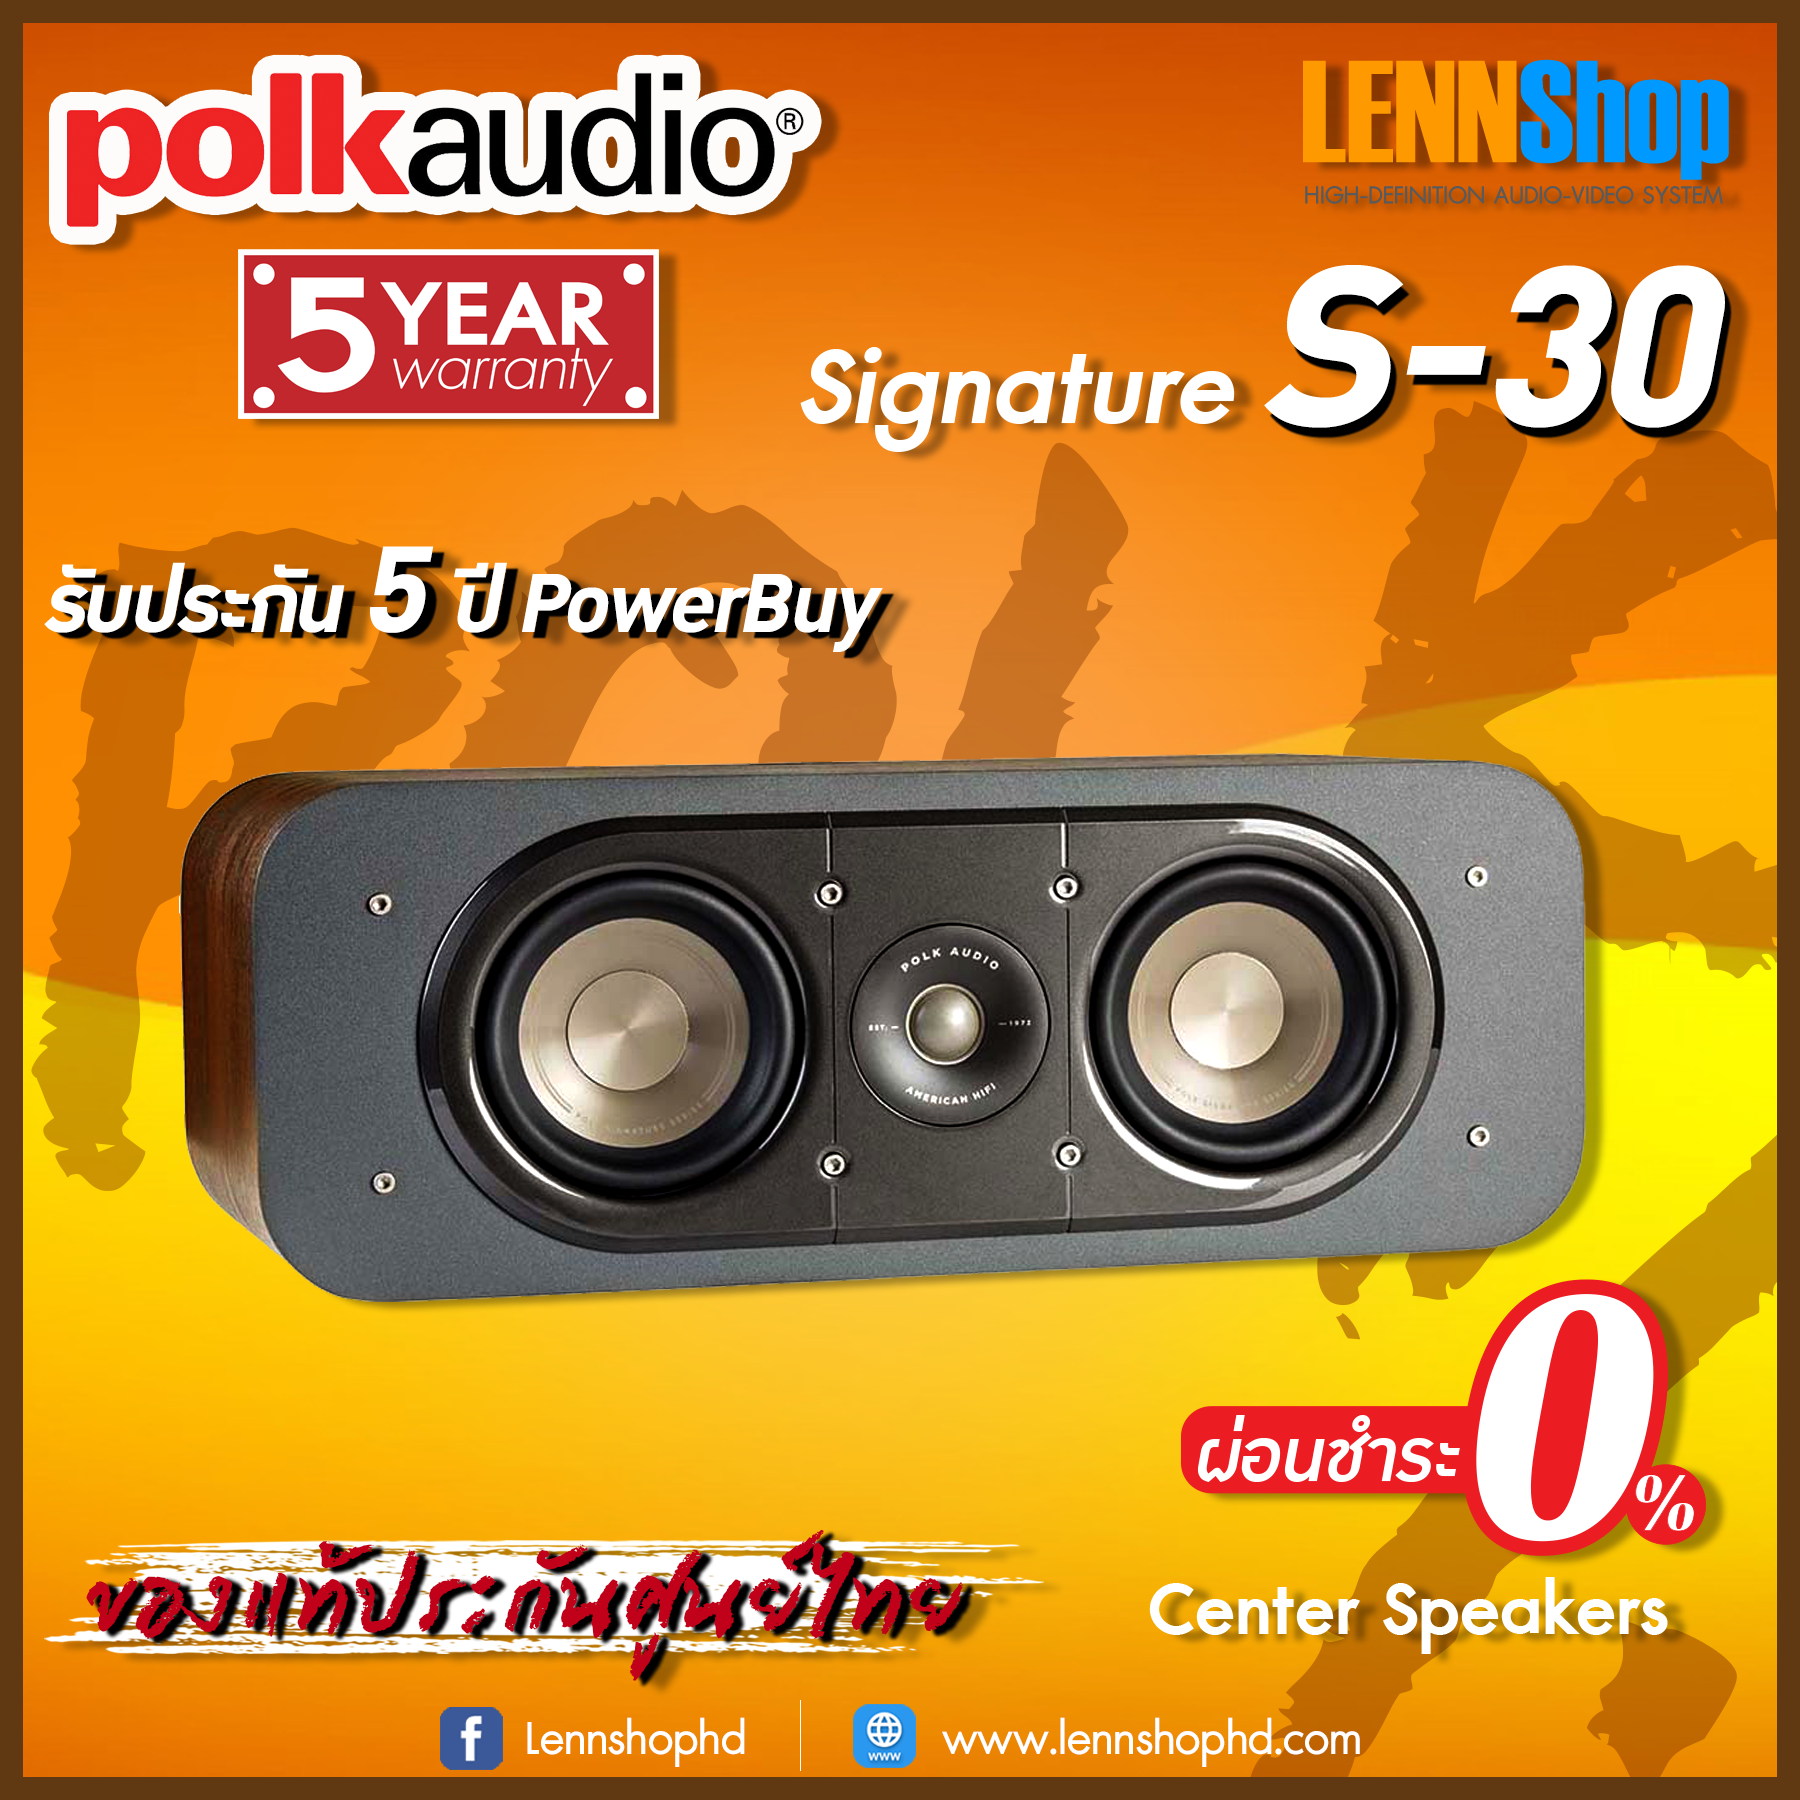 POLK : SIGNATURE S30 ผ่อน 0�nter Speaker รับประกัน 5 ปี บริษัท POWERBUY / POLK SIGNATURE S30 / POLK S30 / LENNSHOP